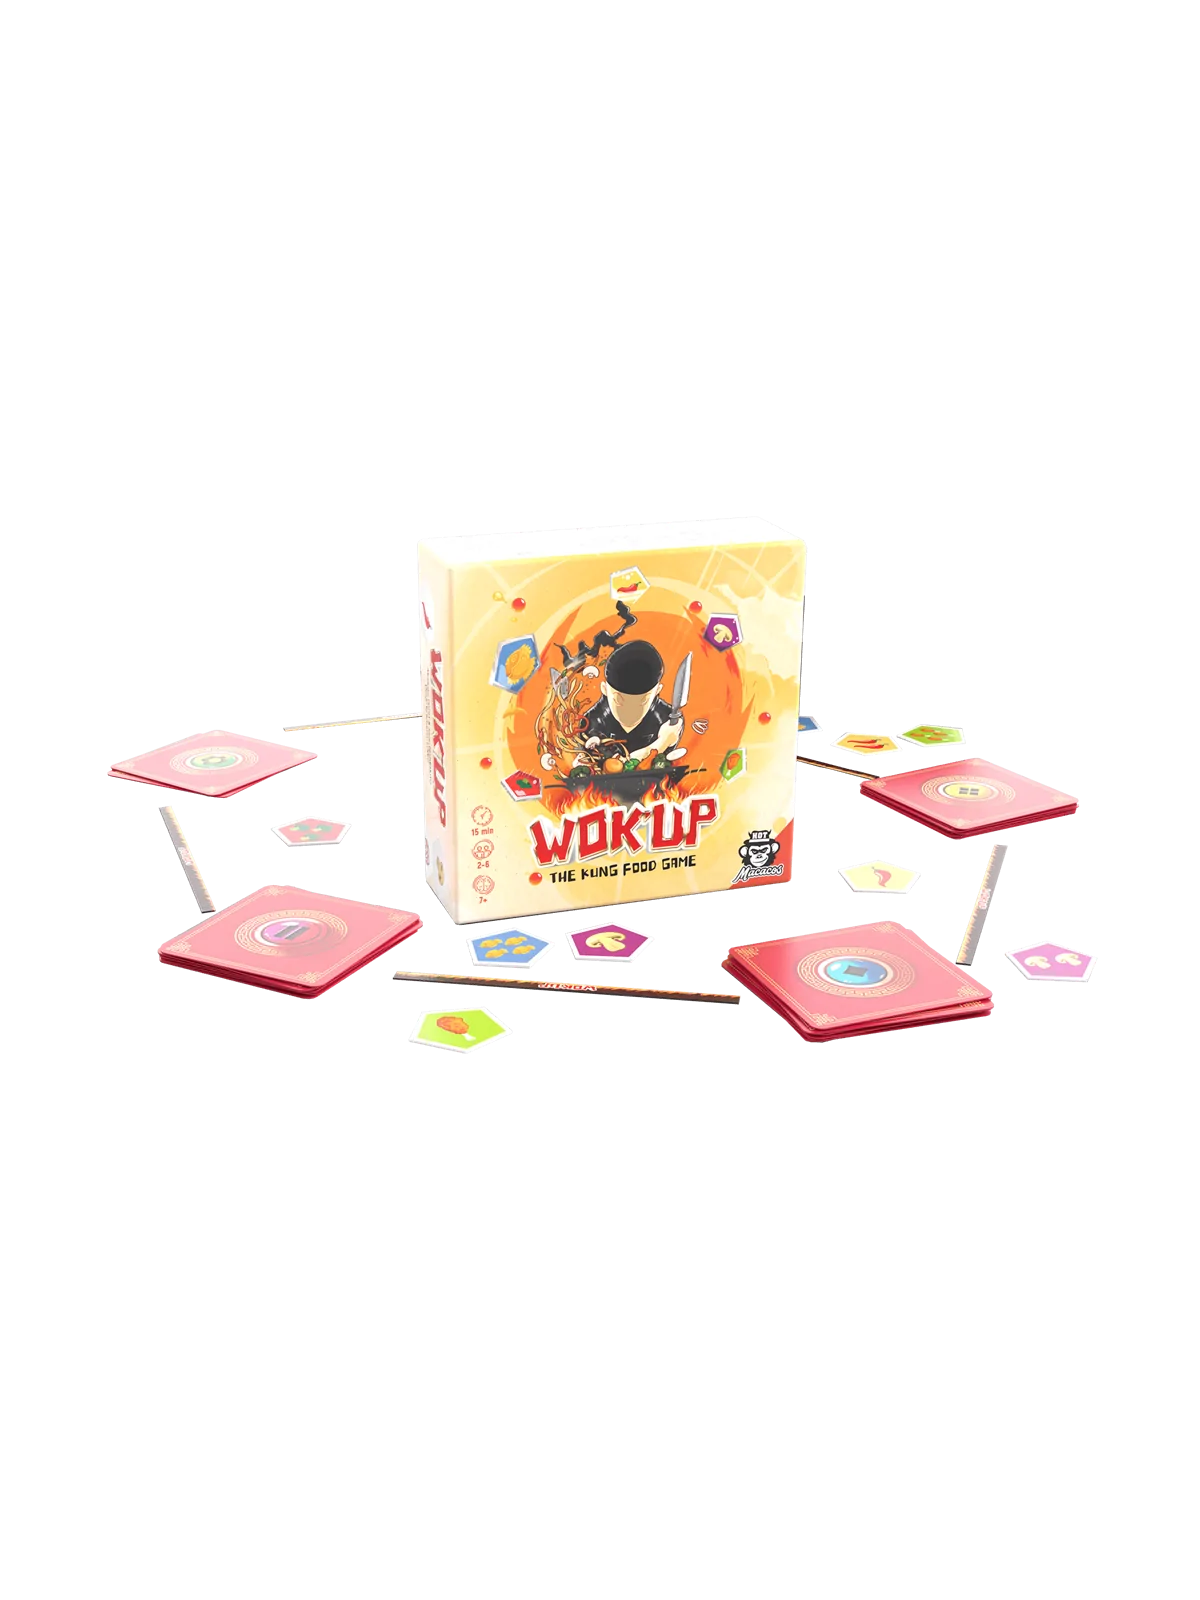 Comprar Wok' Up barato al mejor precio 13,49 € de Hot Macacos